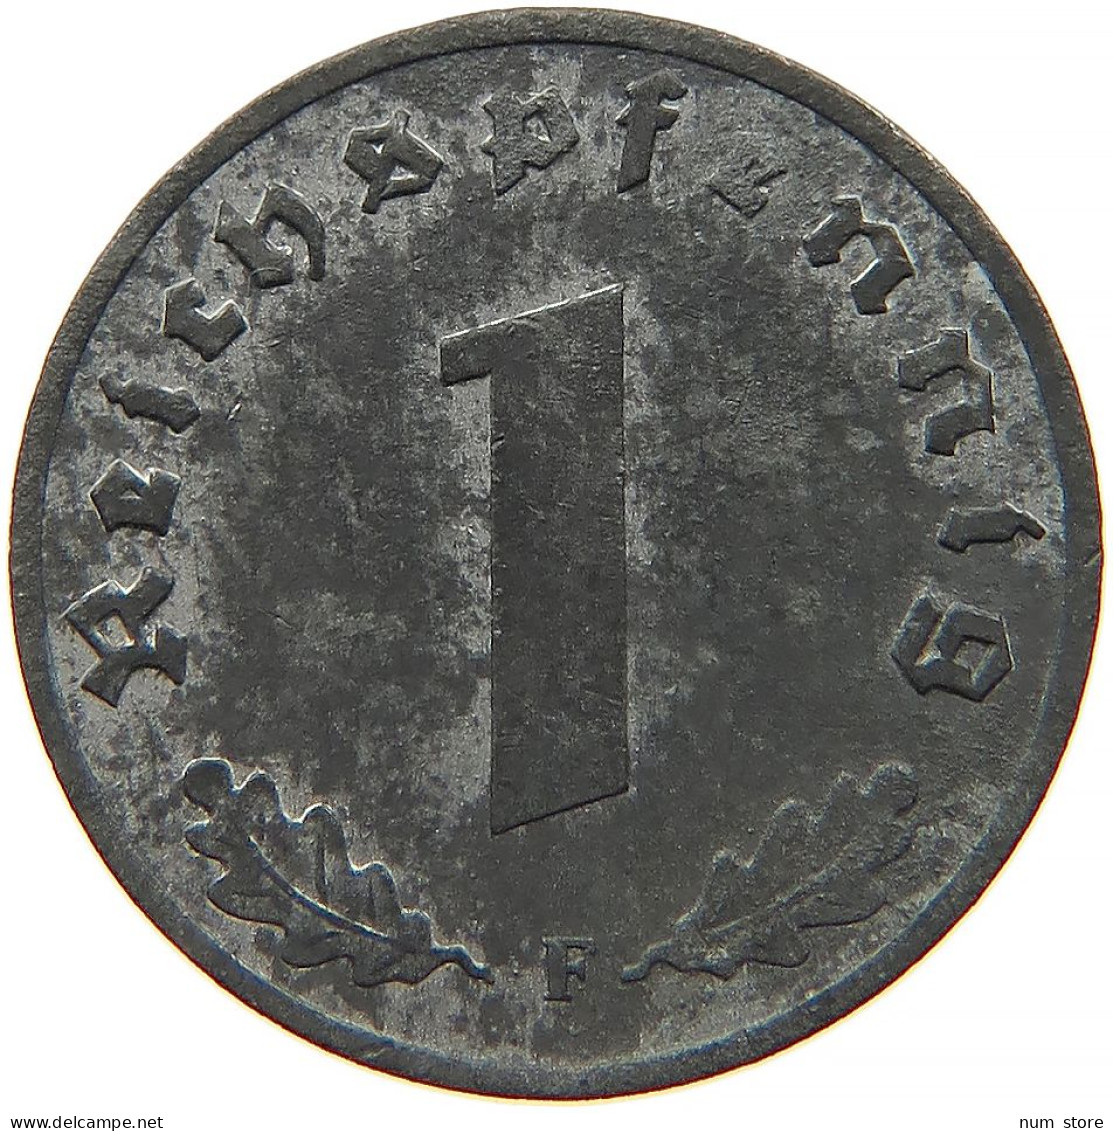 GERMANY 1 REICHSPFENNIG 1943 F #s091 1023 - 1 Reichspfennig